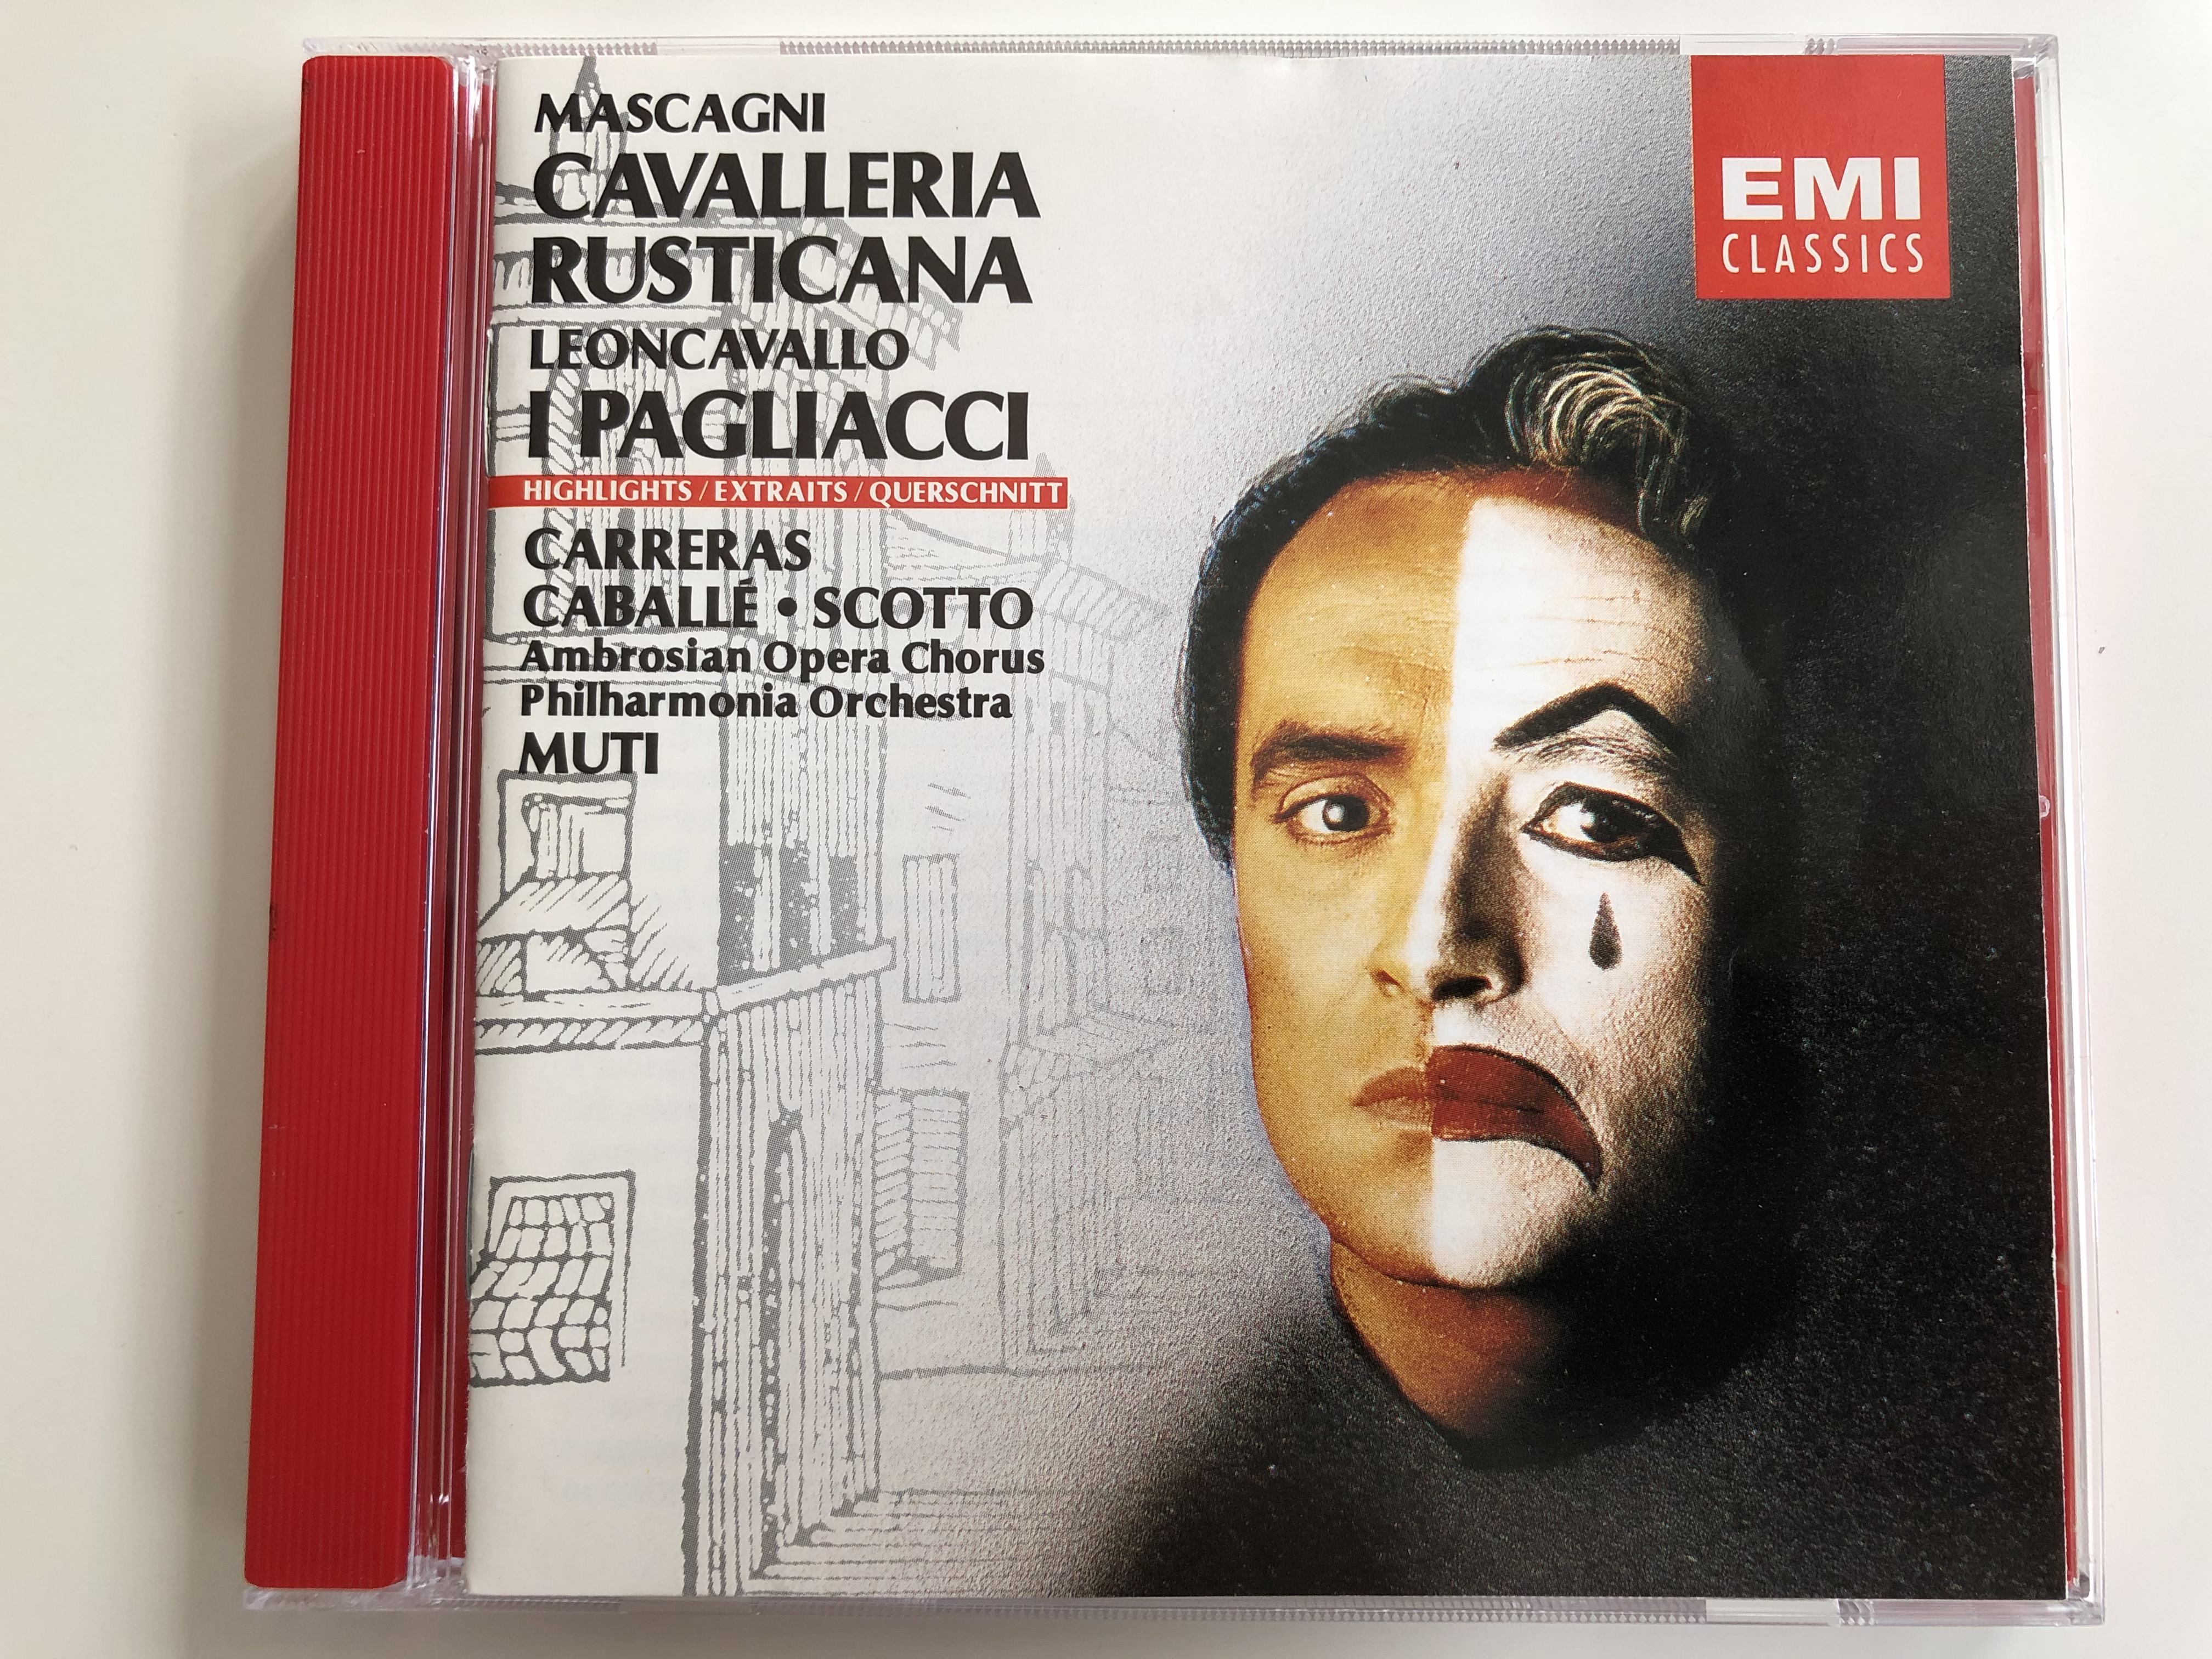 mascagni-cavalleria-rusticana-leoncavallo-i-pagliacci-highlights-carreras-caball-scotto-ambrosian-opera-chorus-philharmonia-orchestra-muti-emi-classics-audio-cd-1987-cdm-7-63933-2-1-.jpg